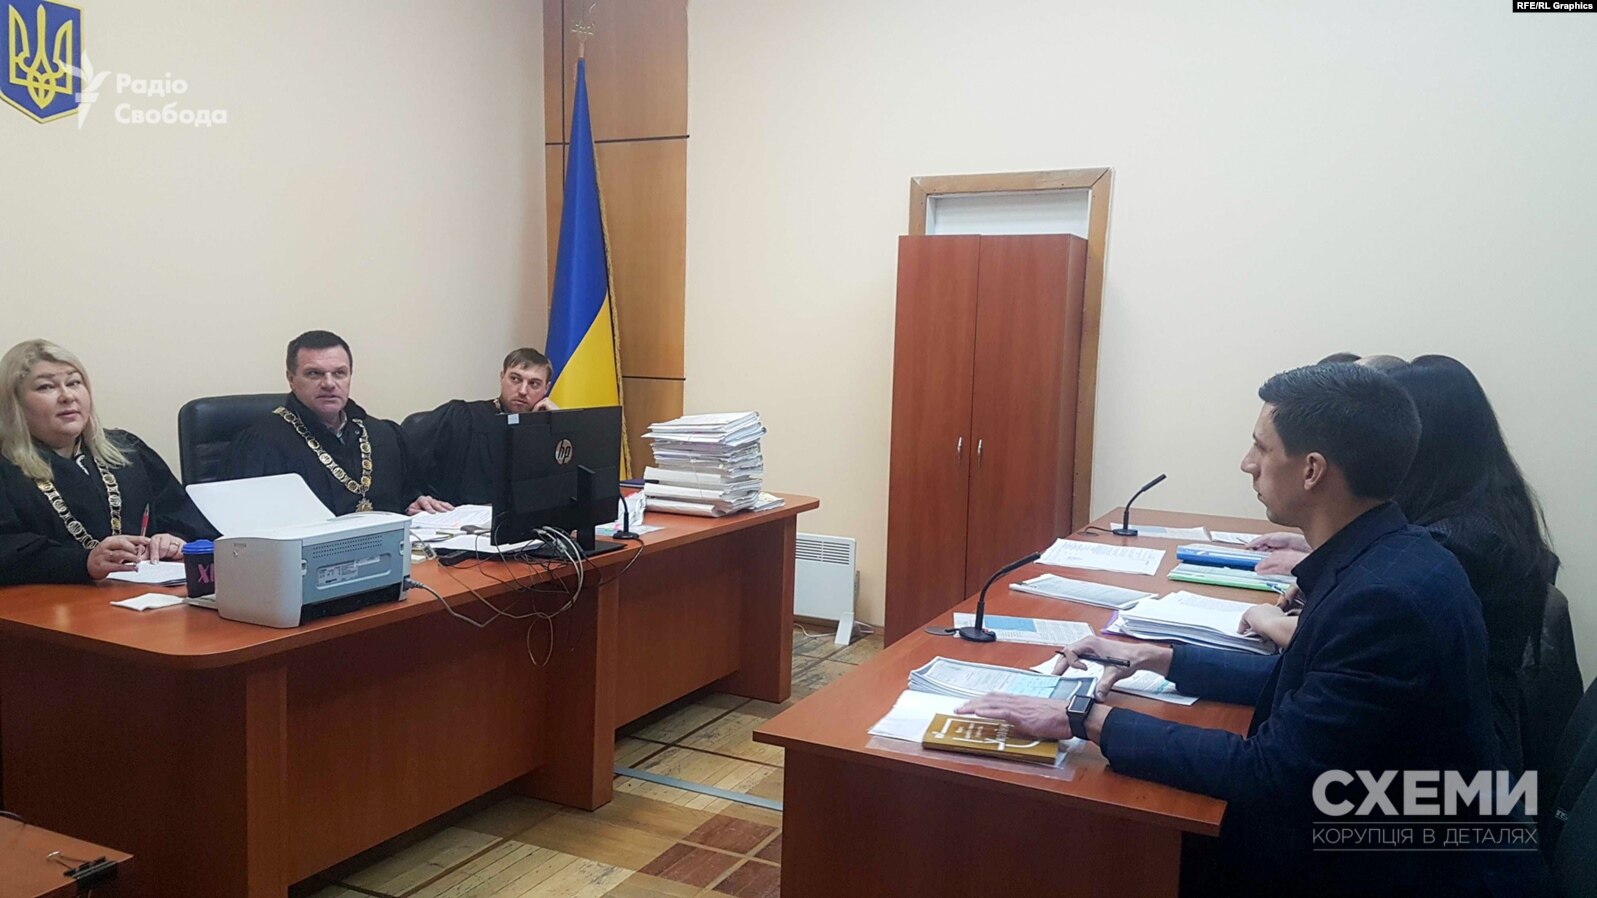 19 марта суд в Киеве начал рассматривать апелляционную жалобу ГМСУ и СБУ на решение первой инстанции, которое вернуло статус беженца Юрченко